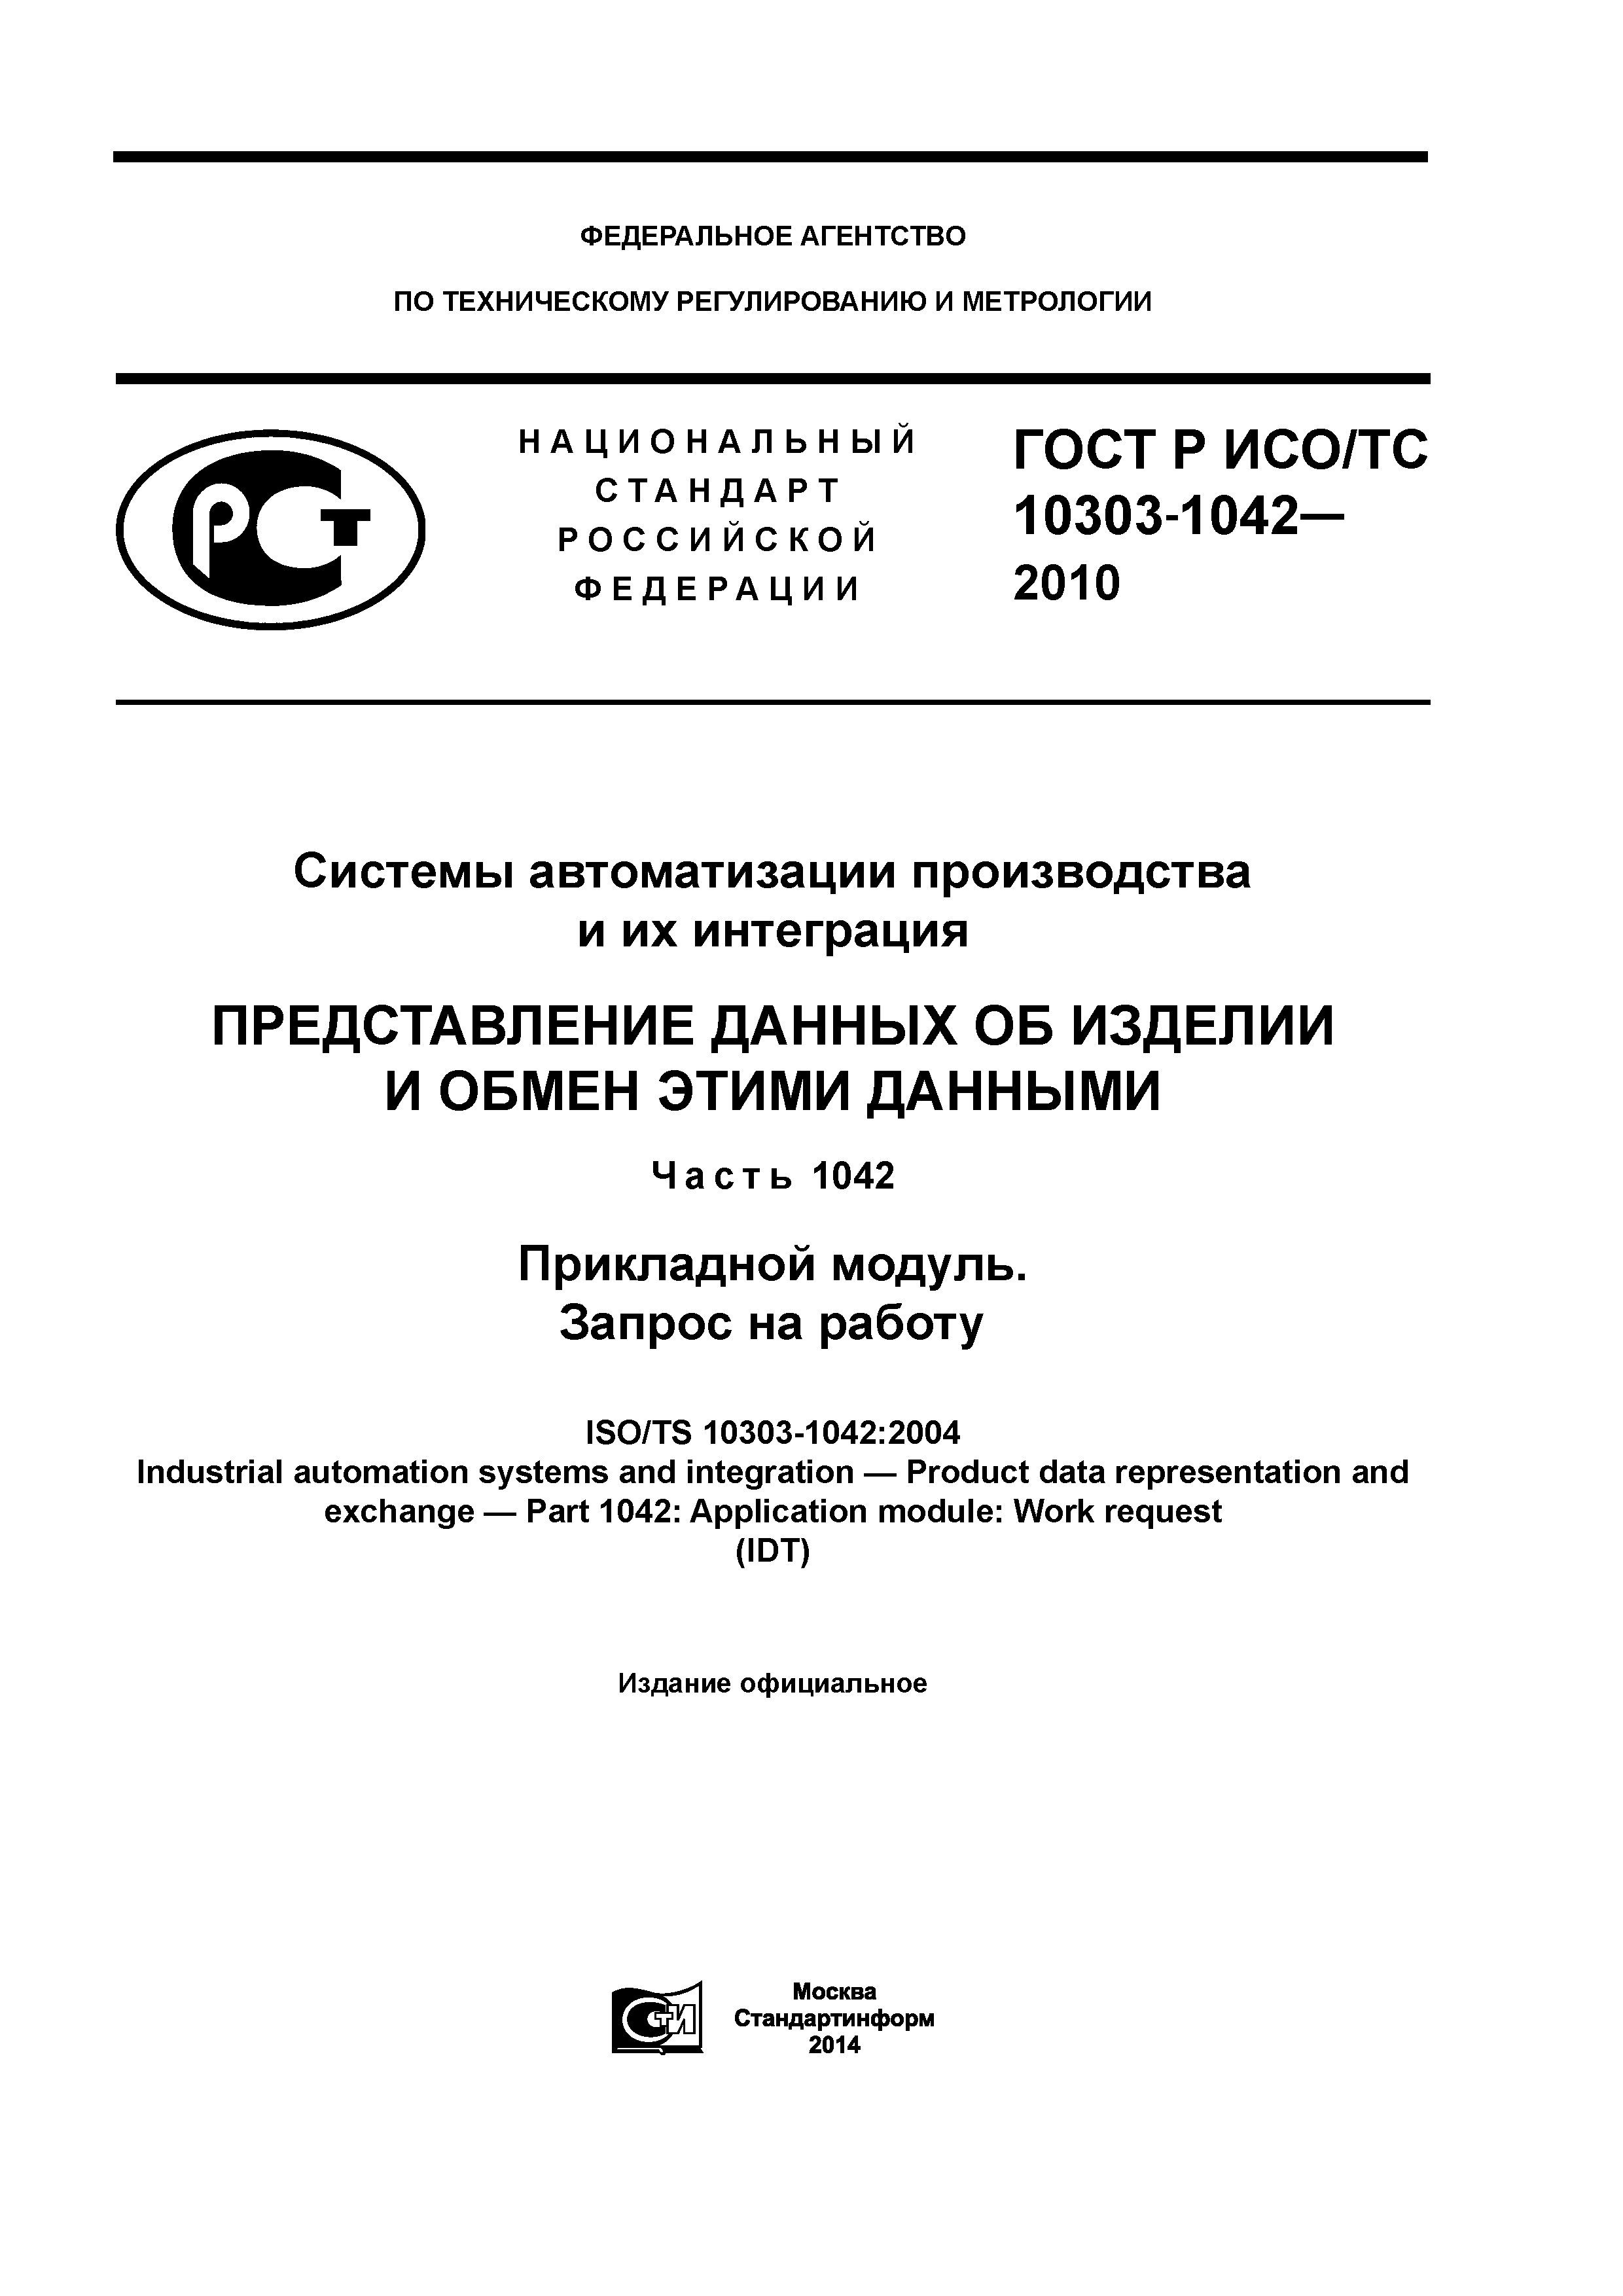 ГОСТ Р ИСО/ТС 10303-1042-2013